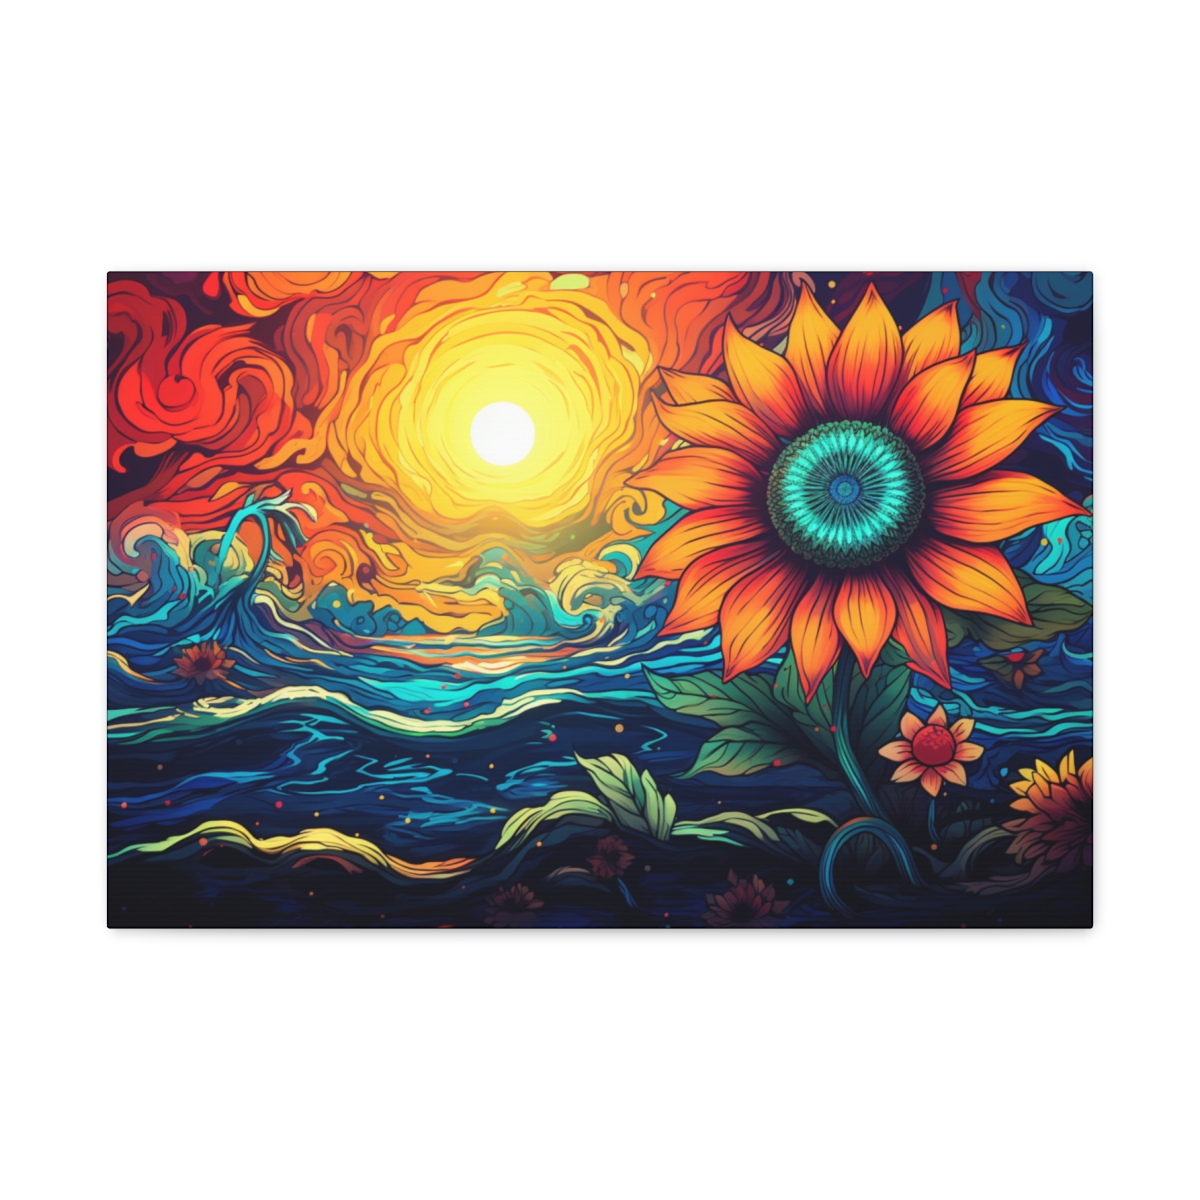 Flower HIppie Art: Suns We Love